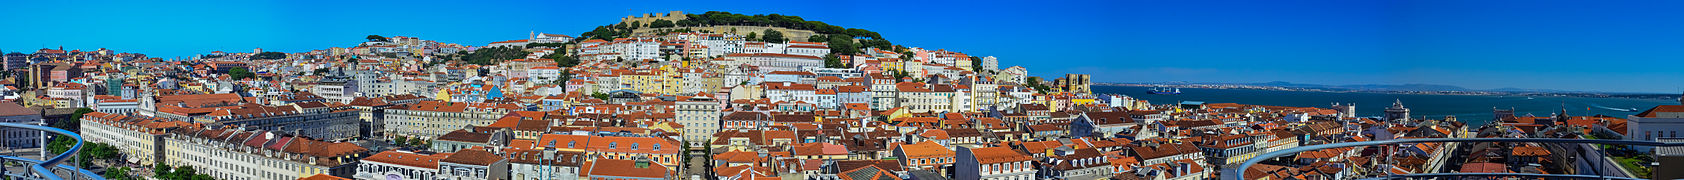 Panorama du centre de Lisbonne avec en arrière-plan le château Saint-Georges depuis le haut de l'ascenseur de Santa Justa.